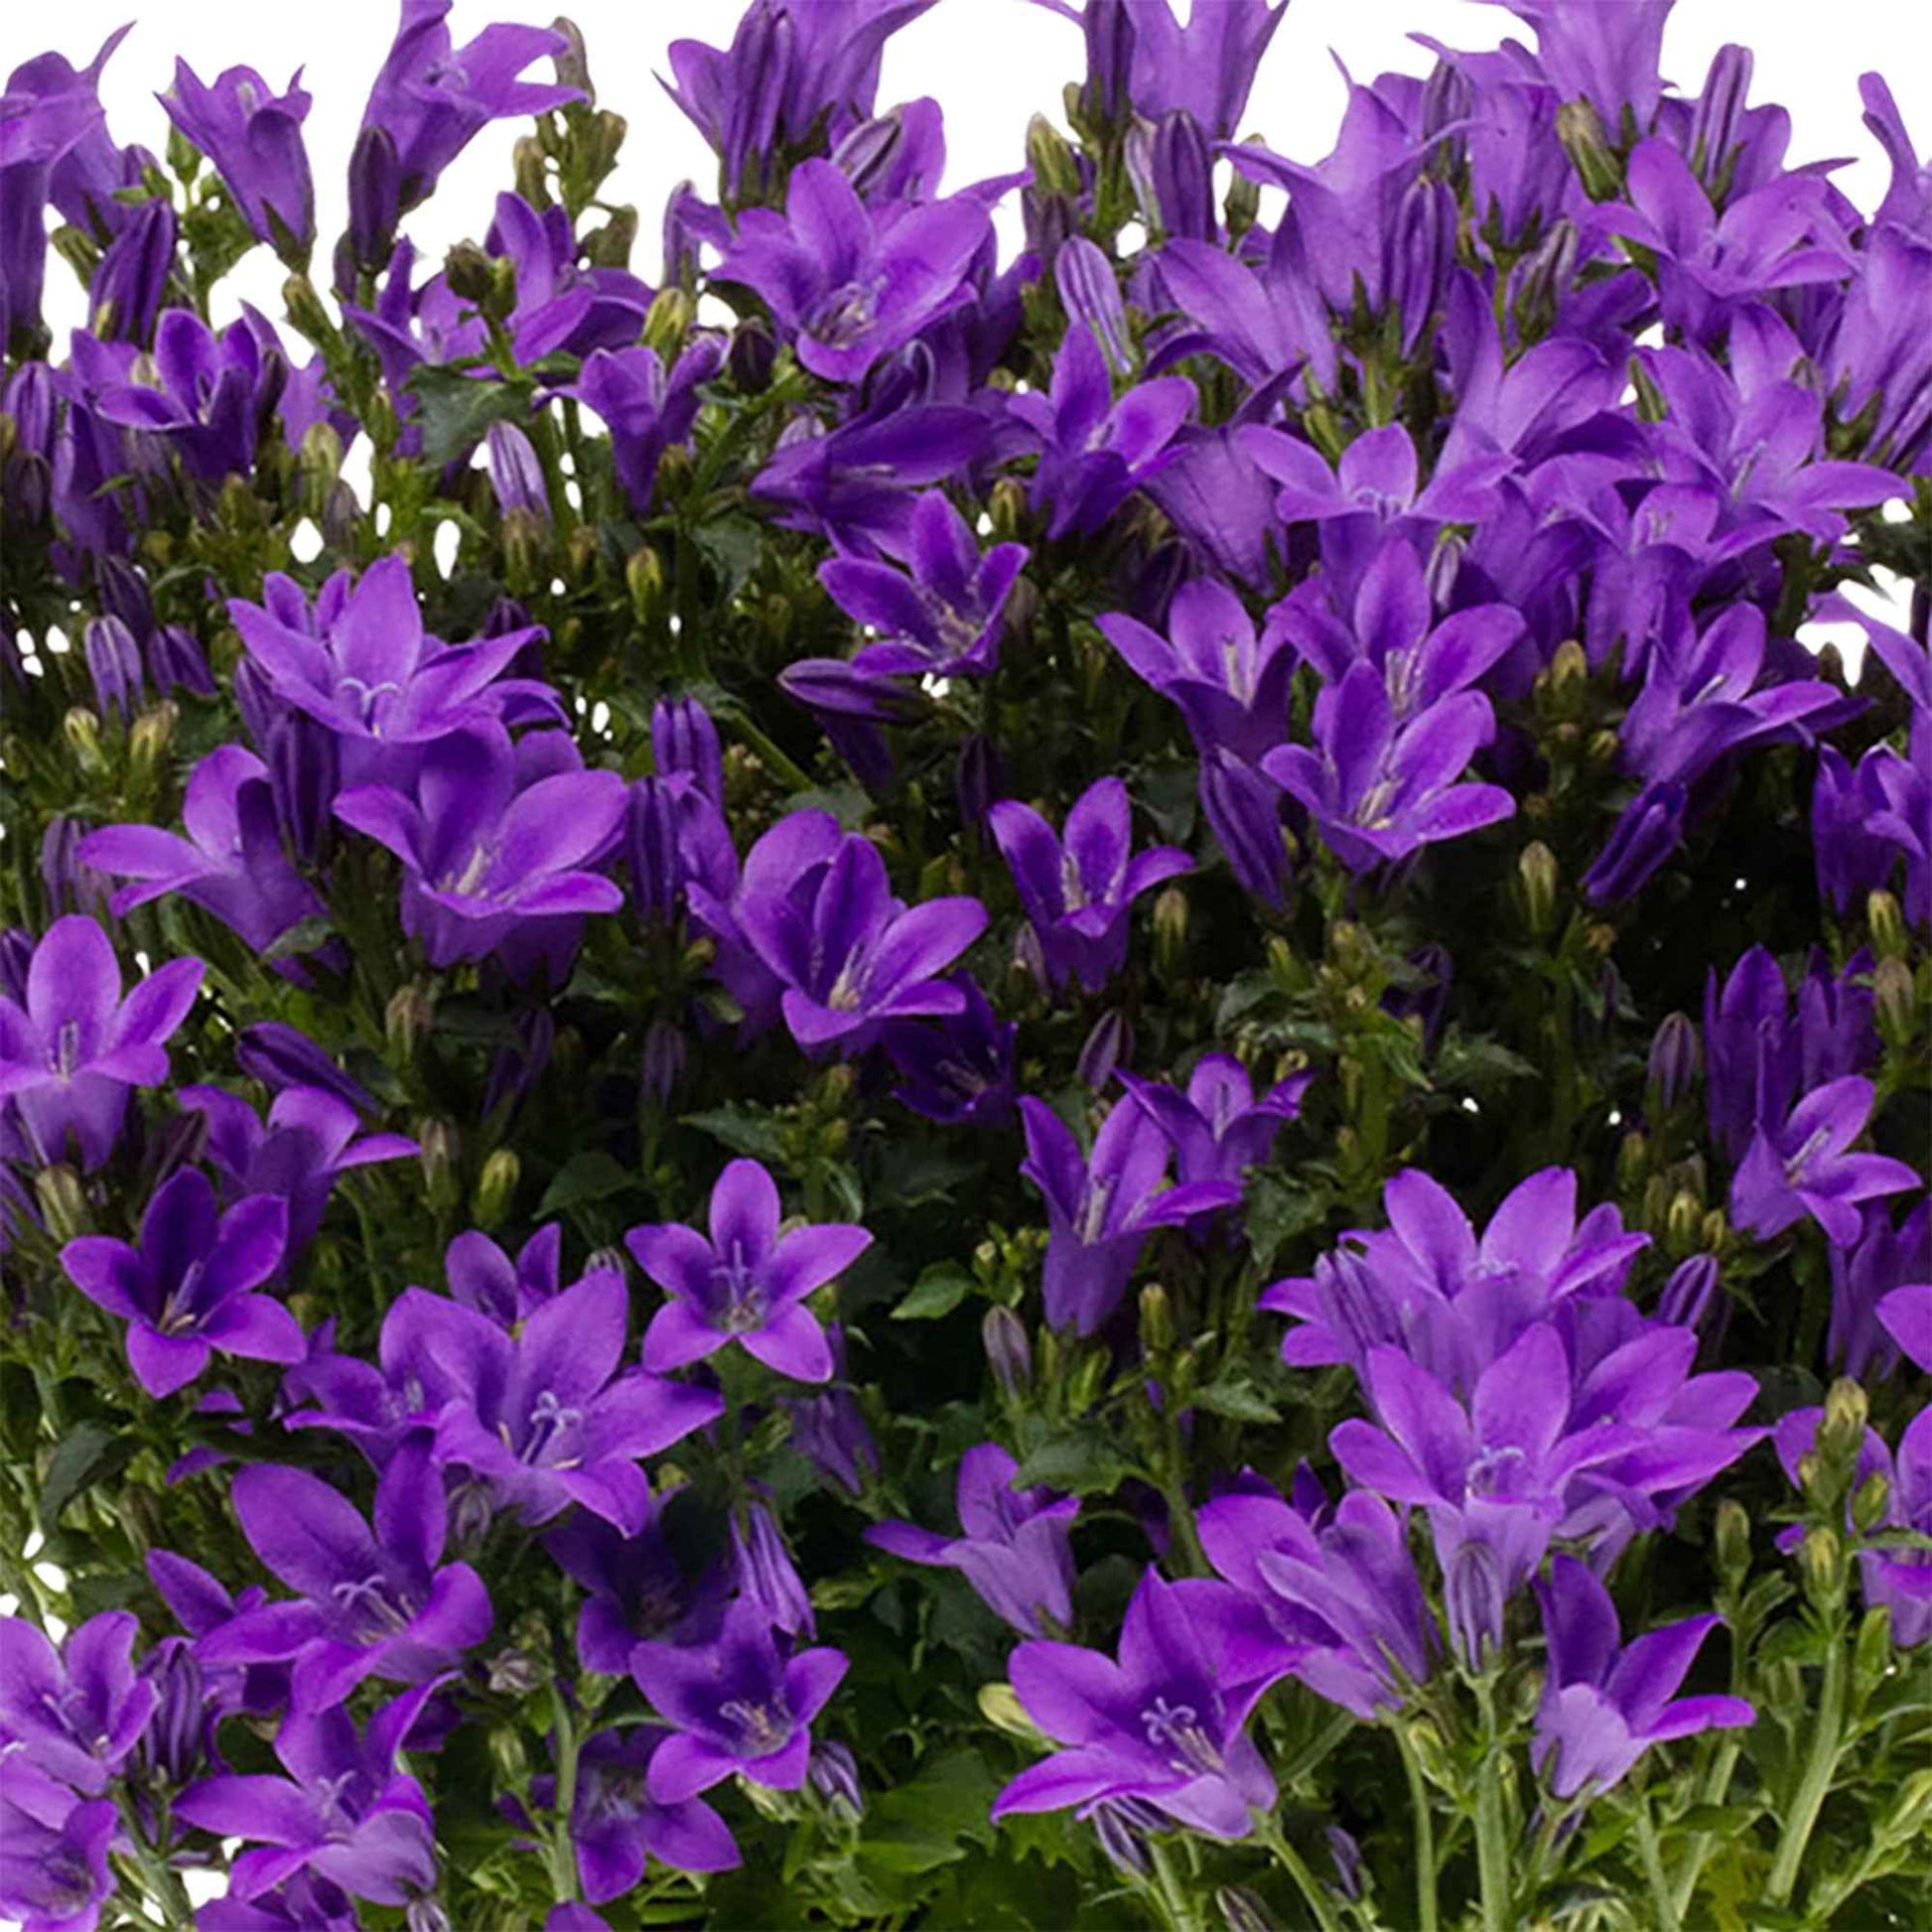 Achetez maintenant une plante vivace 3x Campanule Campanula 'Ambella  Intense Purple' violet avec jardinière blanc | Bakker.com